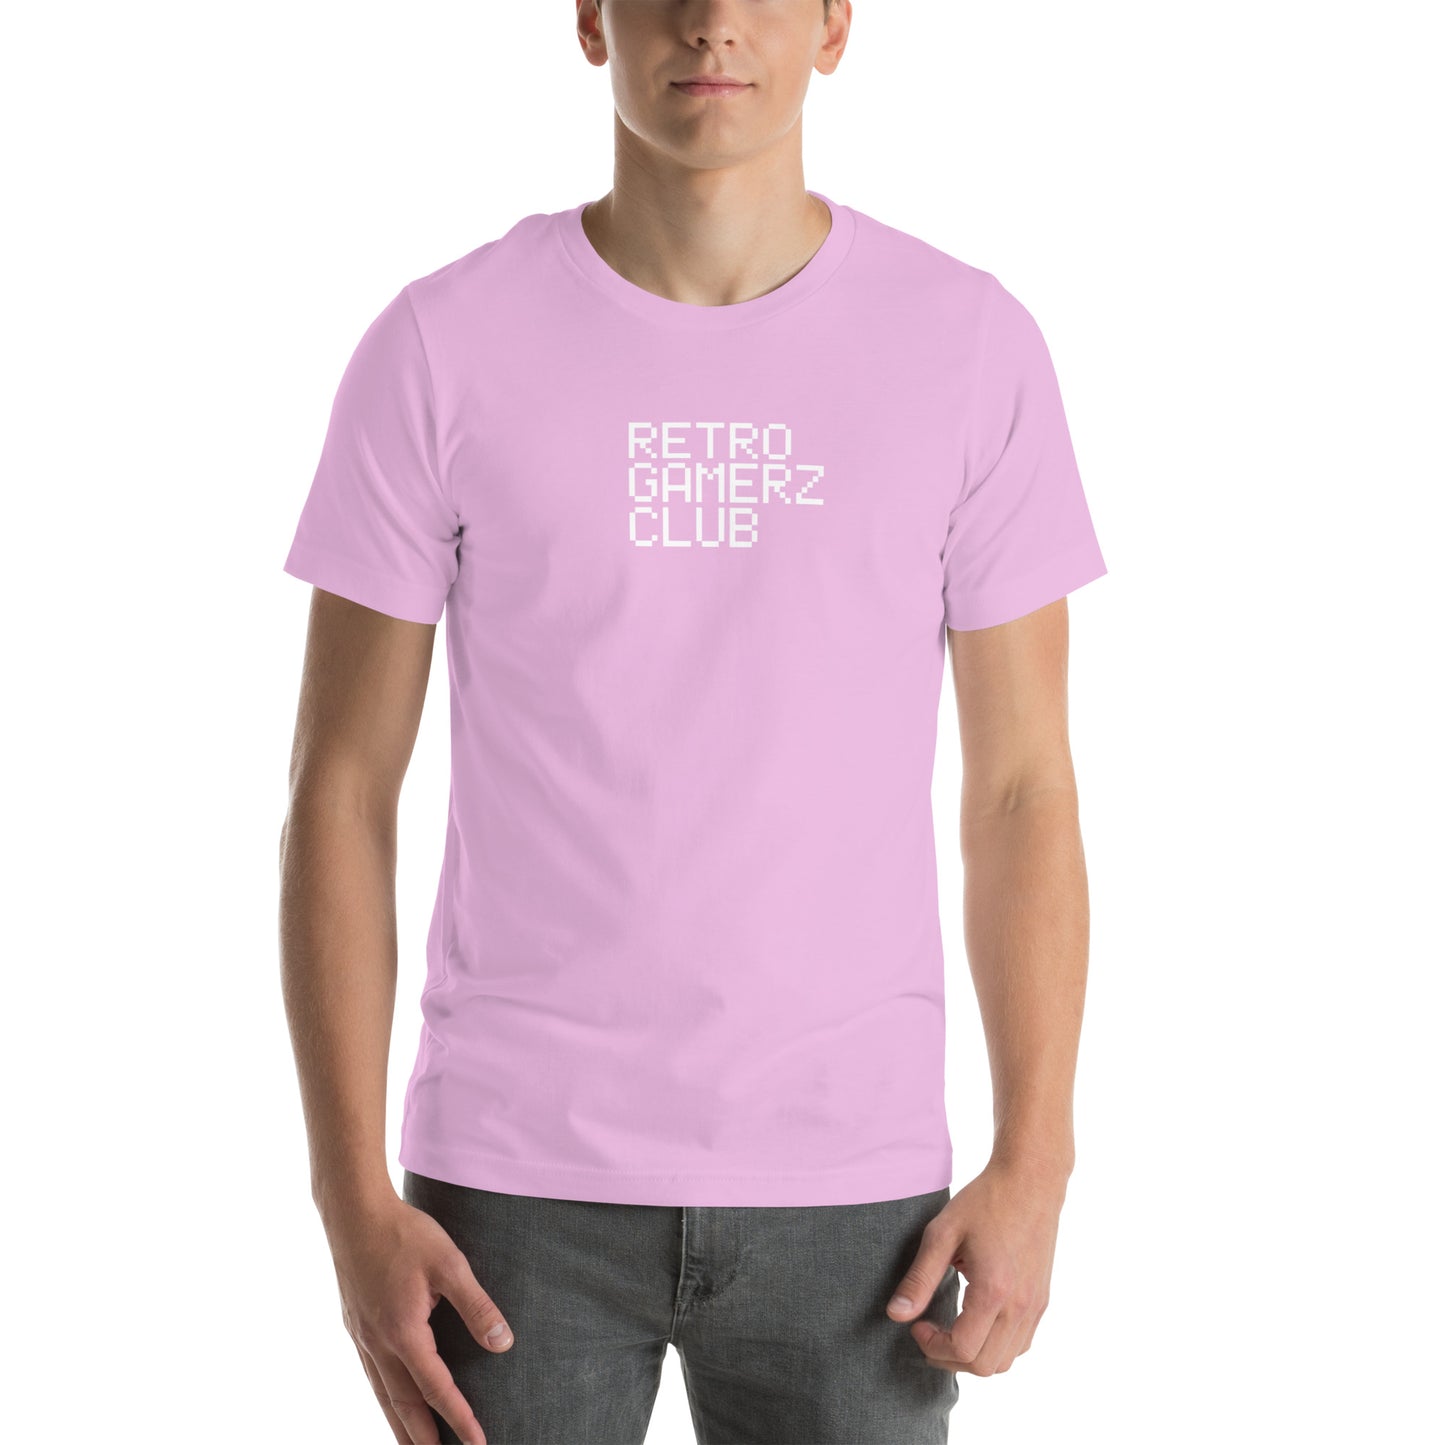 Retro Gamerz Club T-shirt